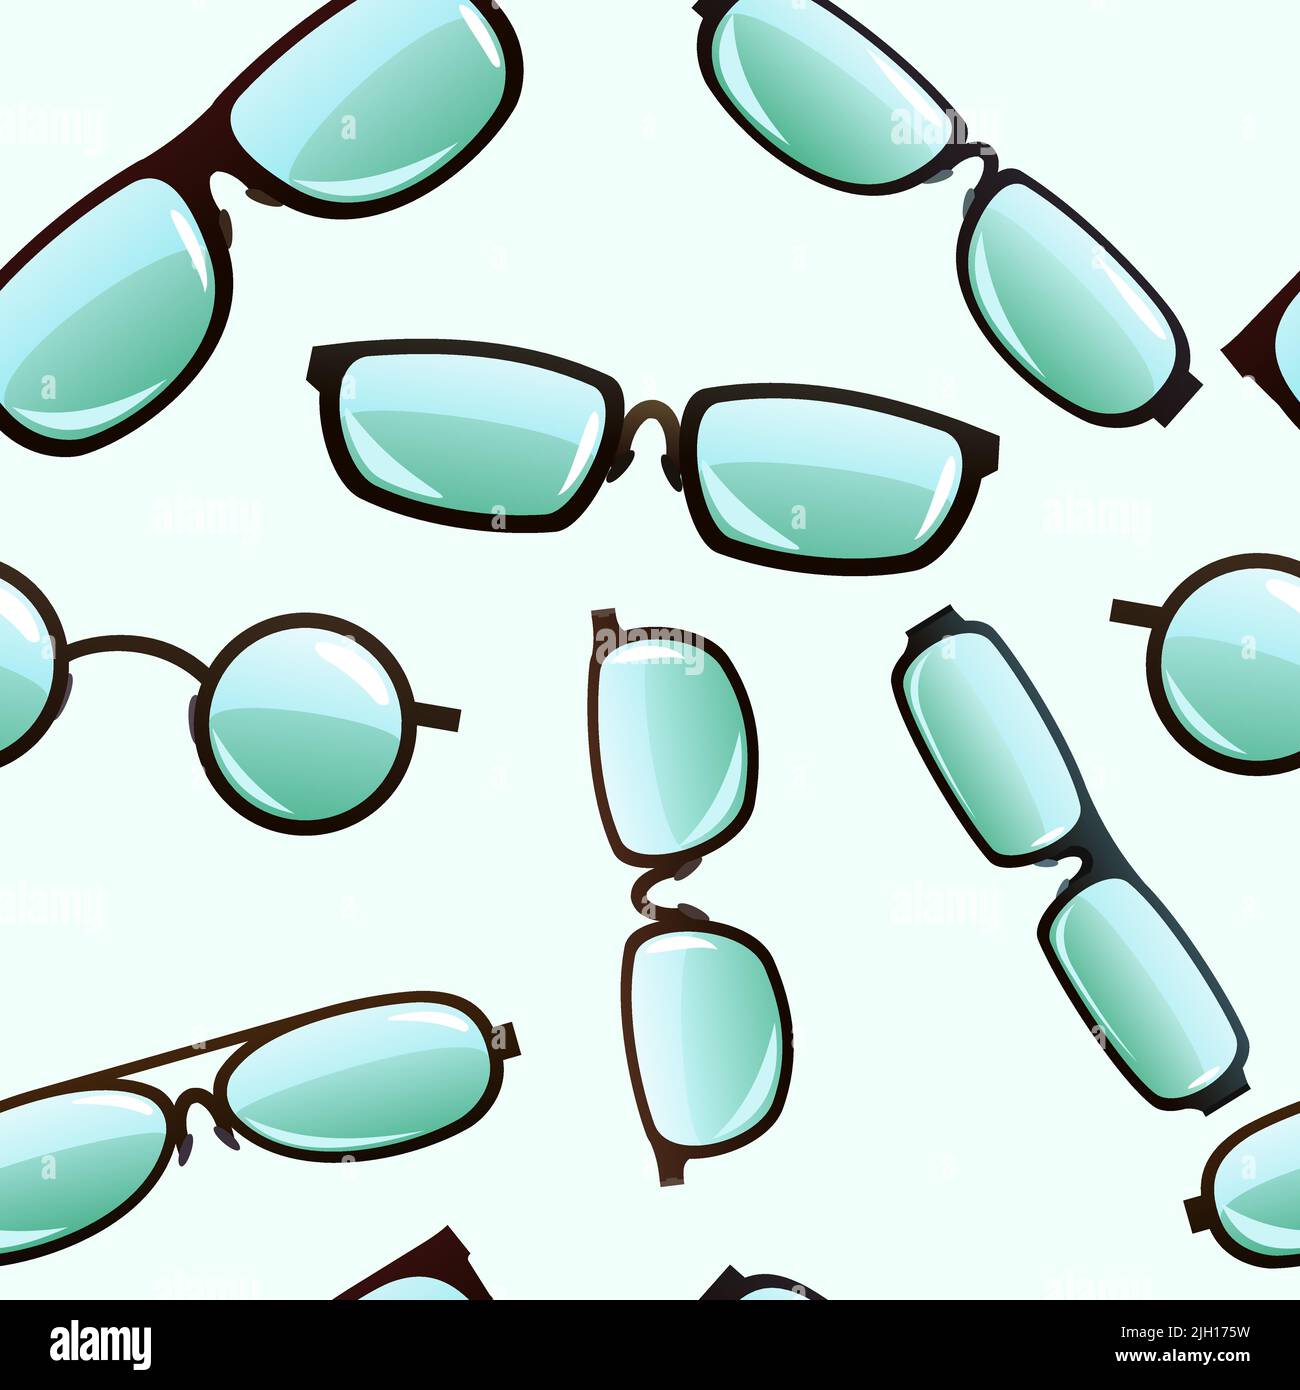 Brillensatz. Optisches Instrument für besseres Sehen. Nahtloses Muster. Objekt auf weißem Hintergrund isoliert. Vektor Stock Vektor